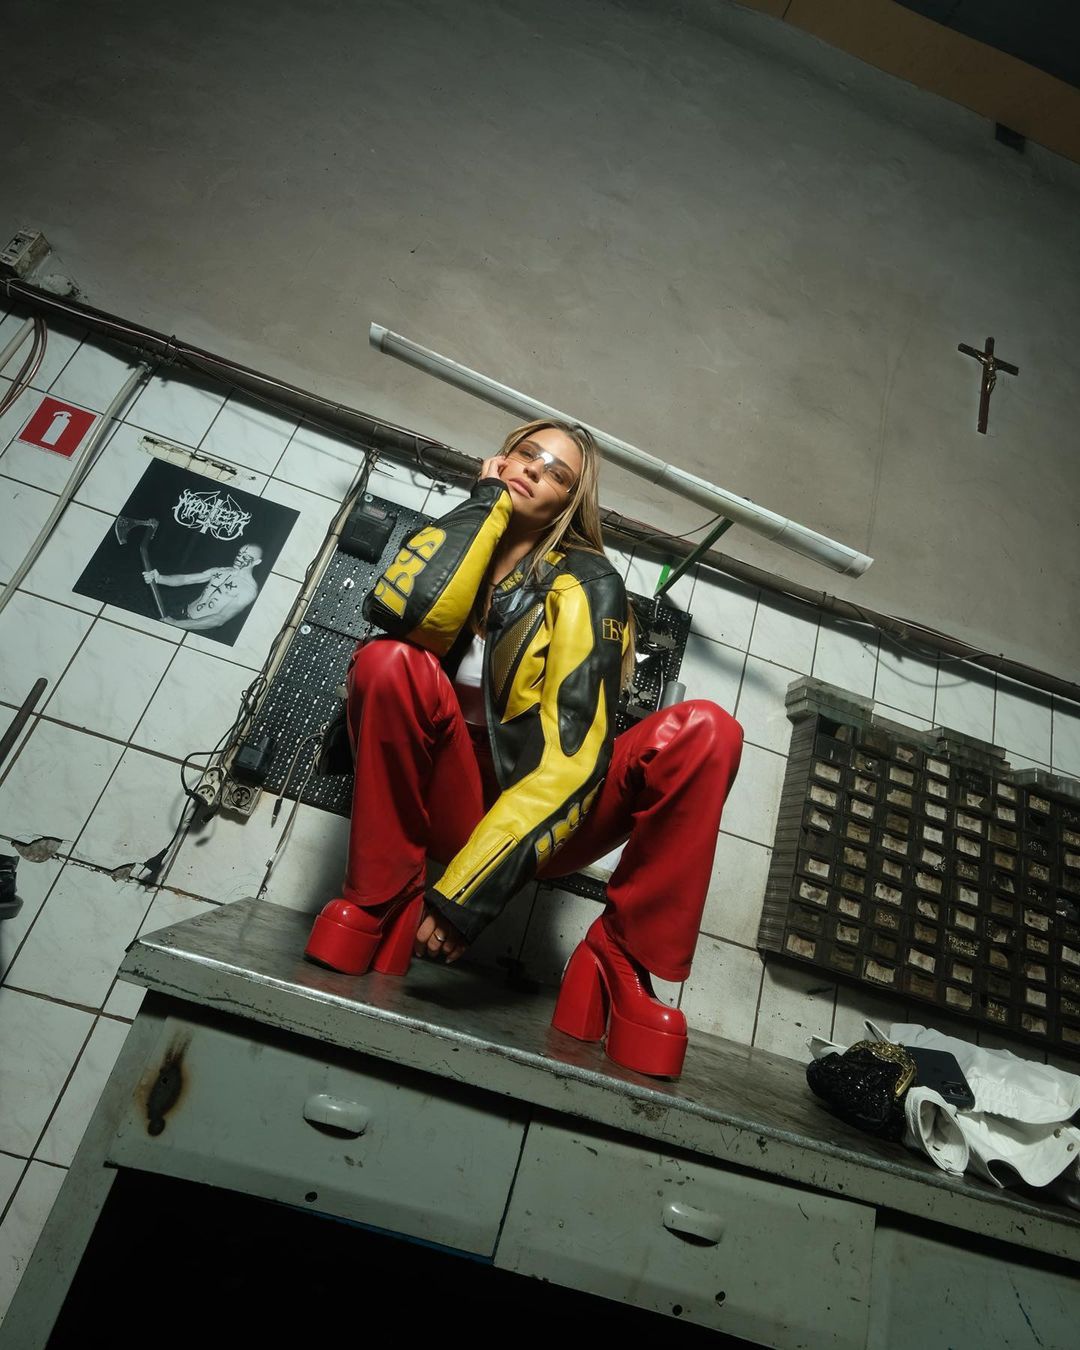 Julia Wieniawa w żółtej kurtce skórzanej
Instagram/juliawieniawa